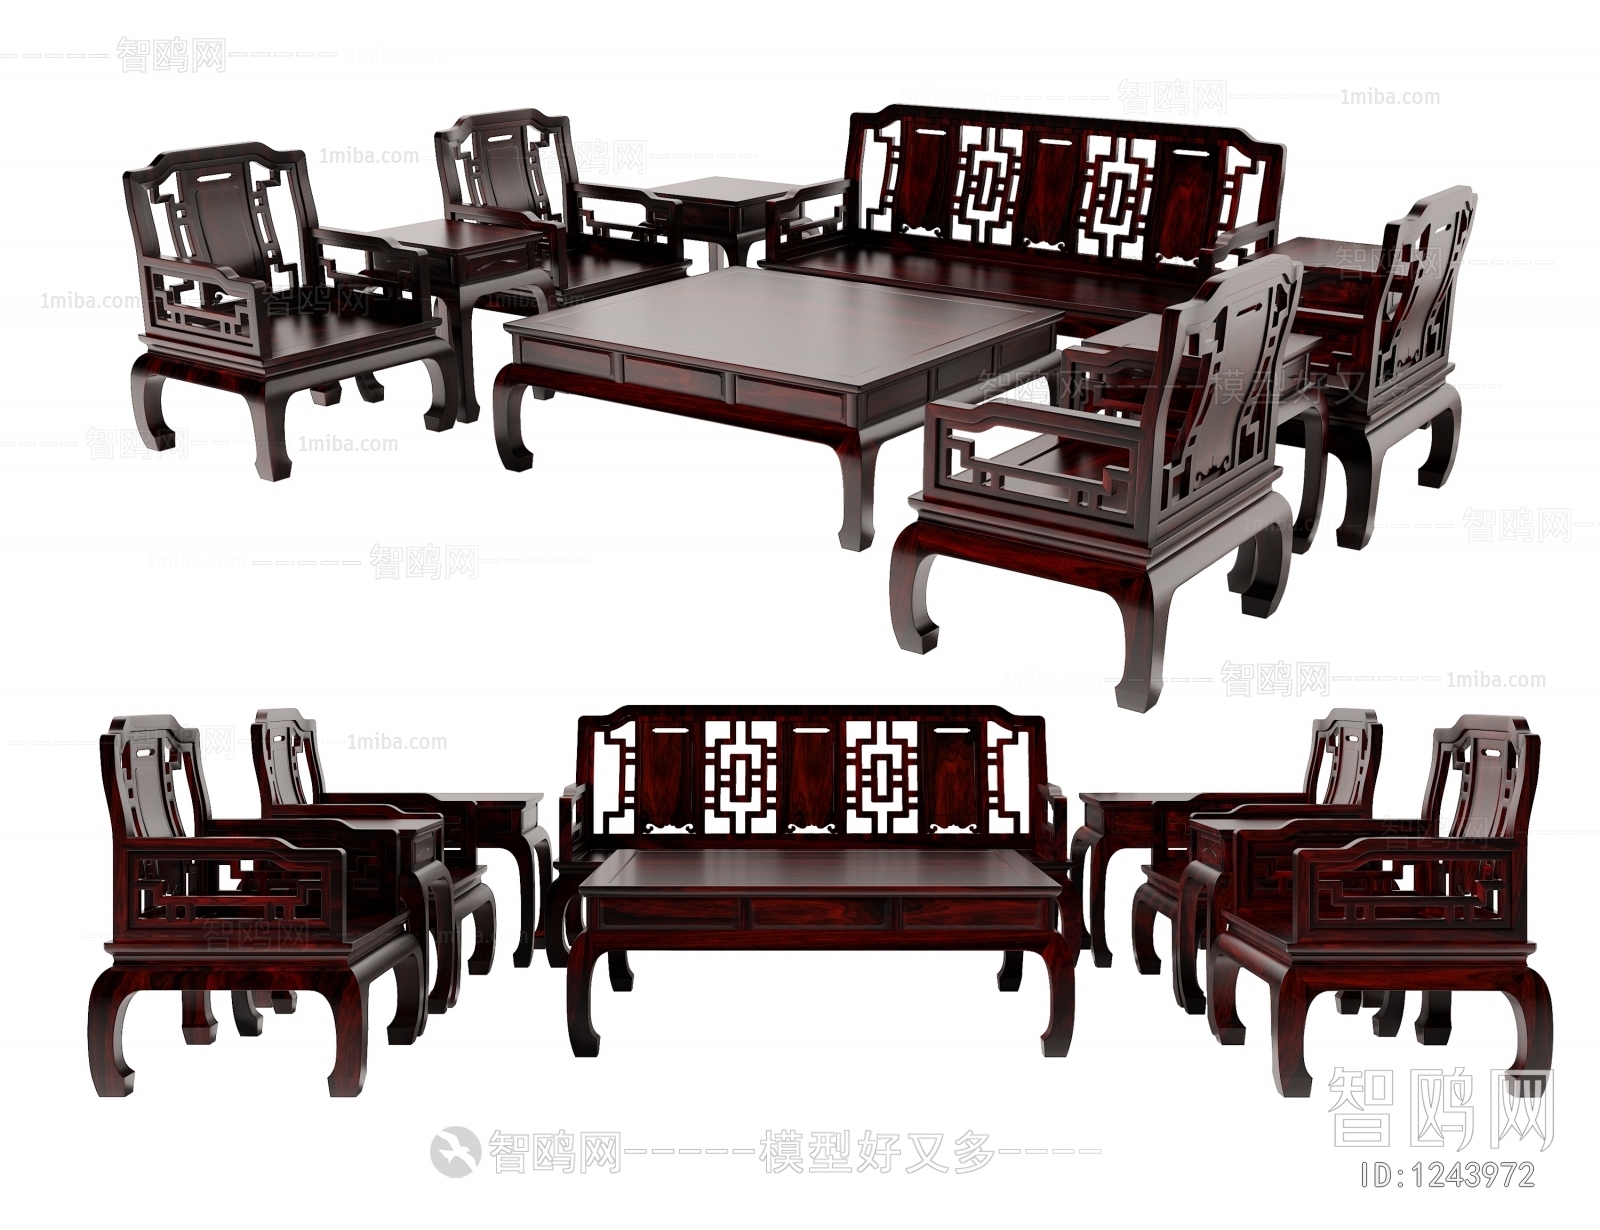 中式组合沙发